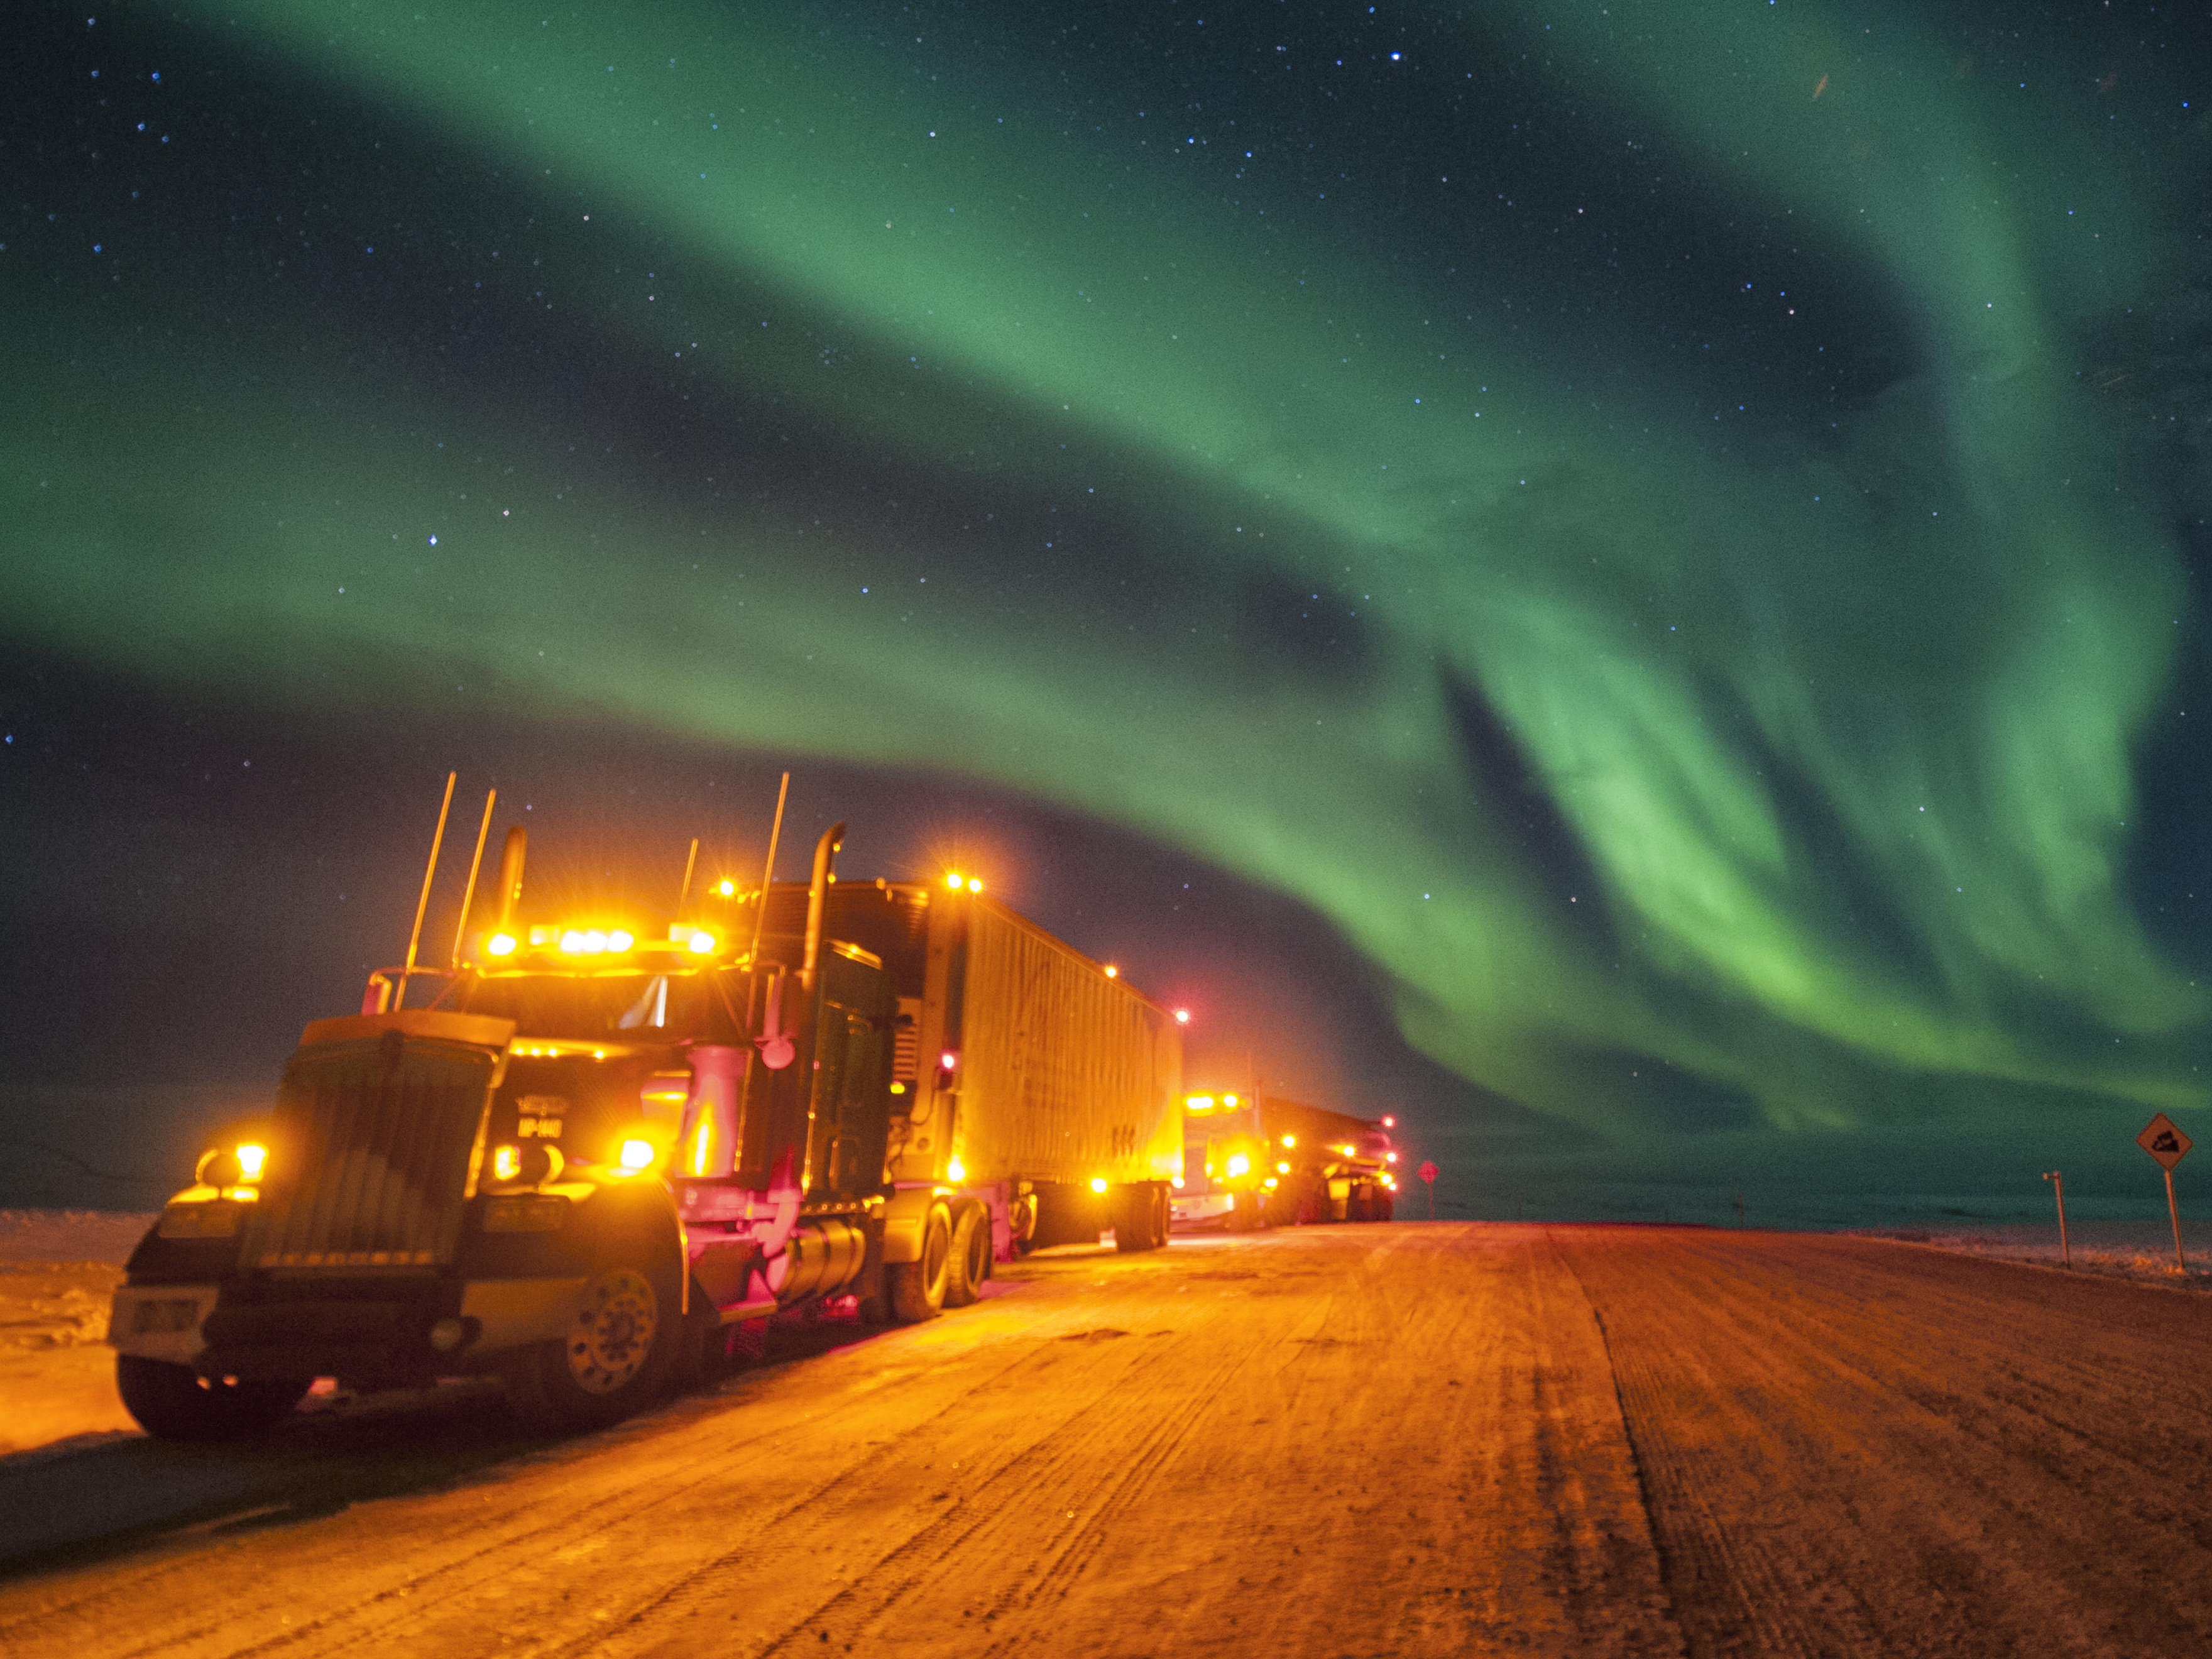 Beleuchteter LKW in einer winterlichen Landschaft im Dunkeln. Am Himmel sind Nordlichter zu sehen.